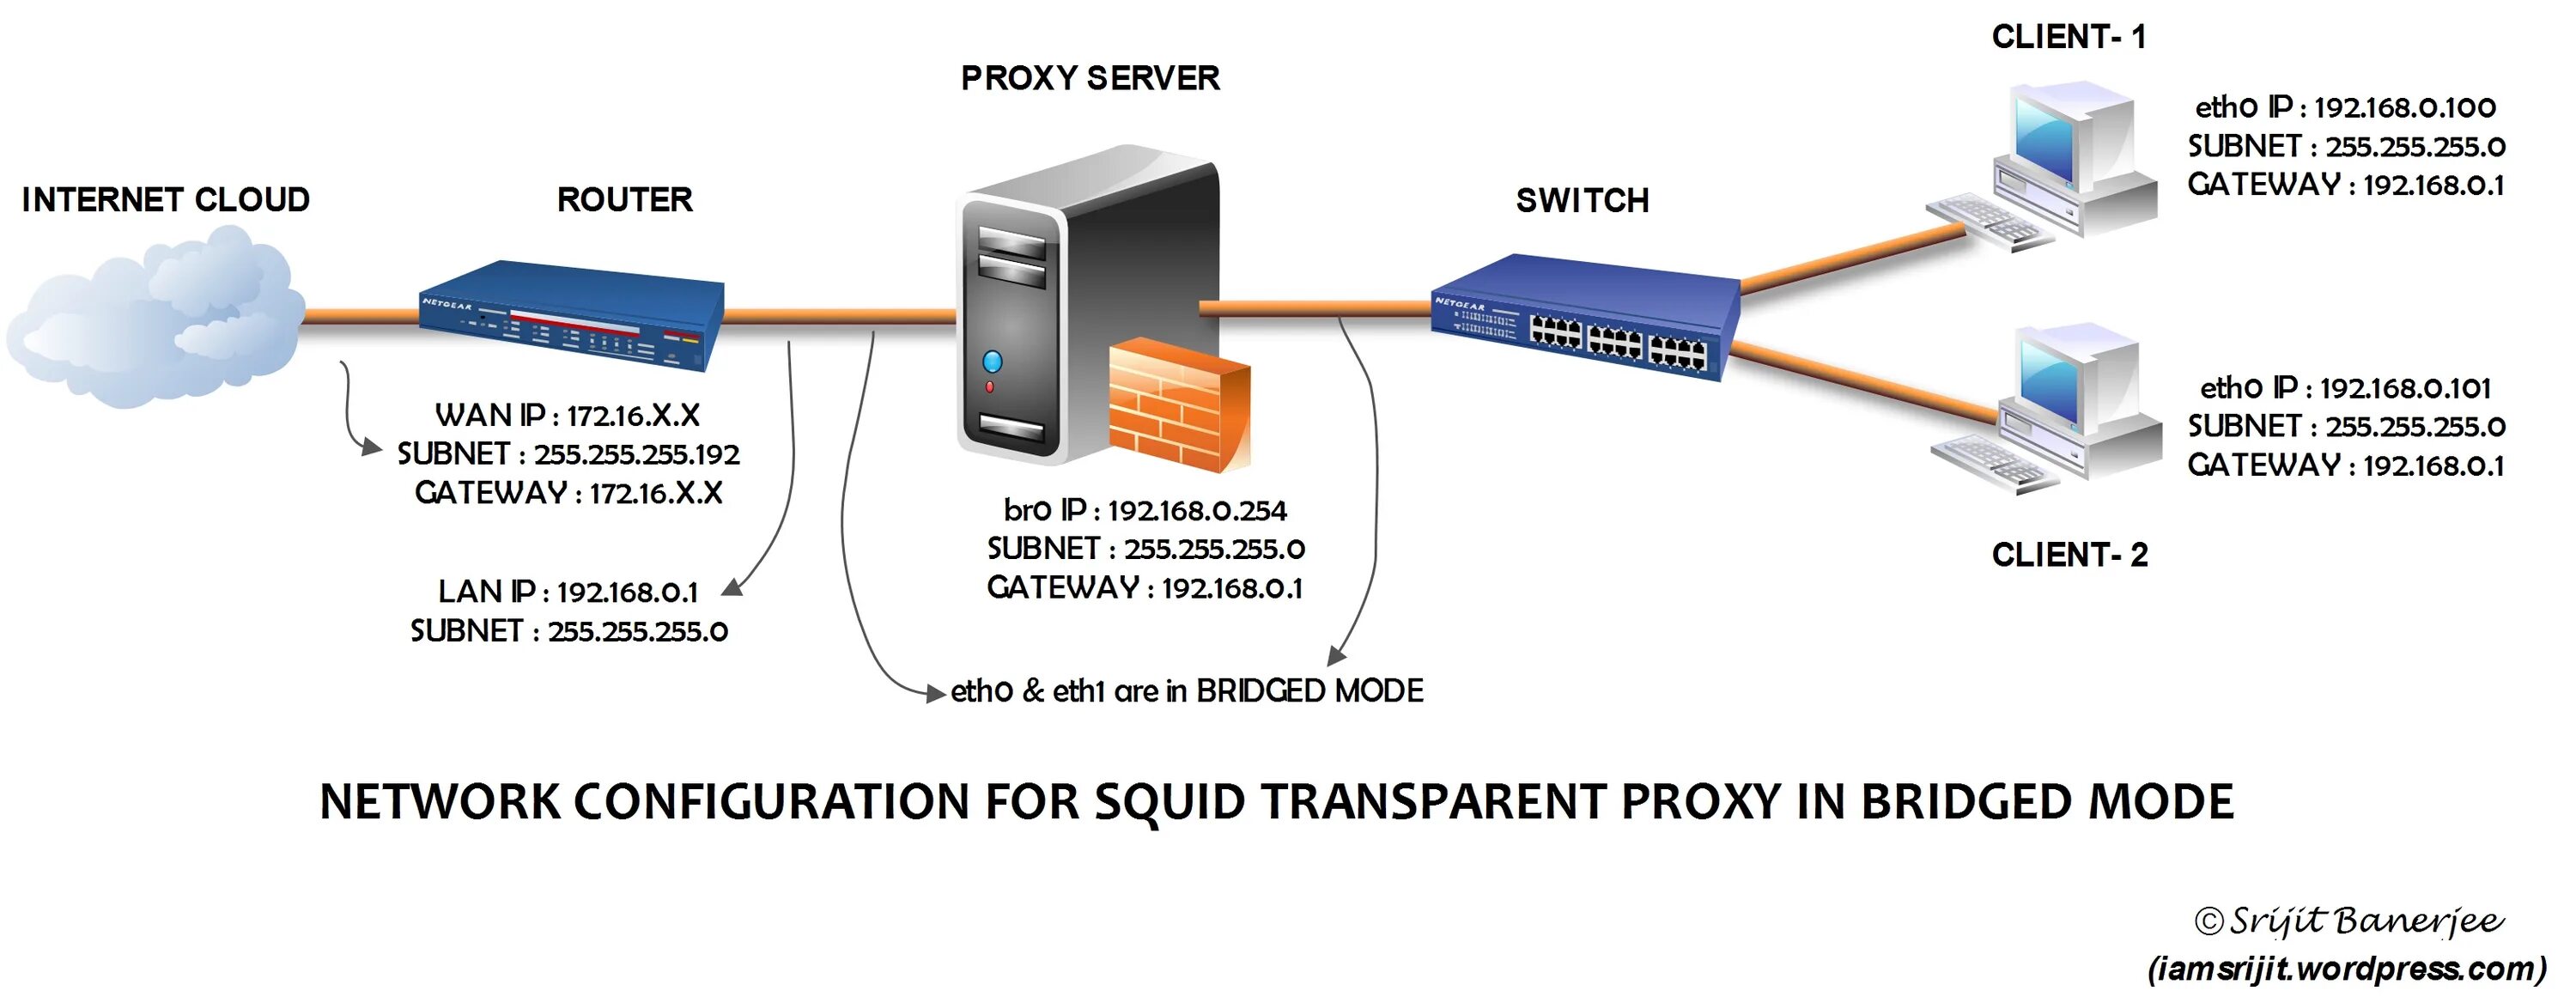 Прокси сервер схема. Прозрачный прокси сервер. Прокси сервер Squid. Режим моста в роутере что это.